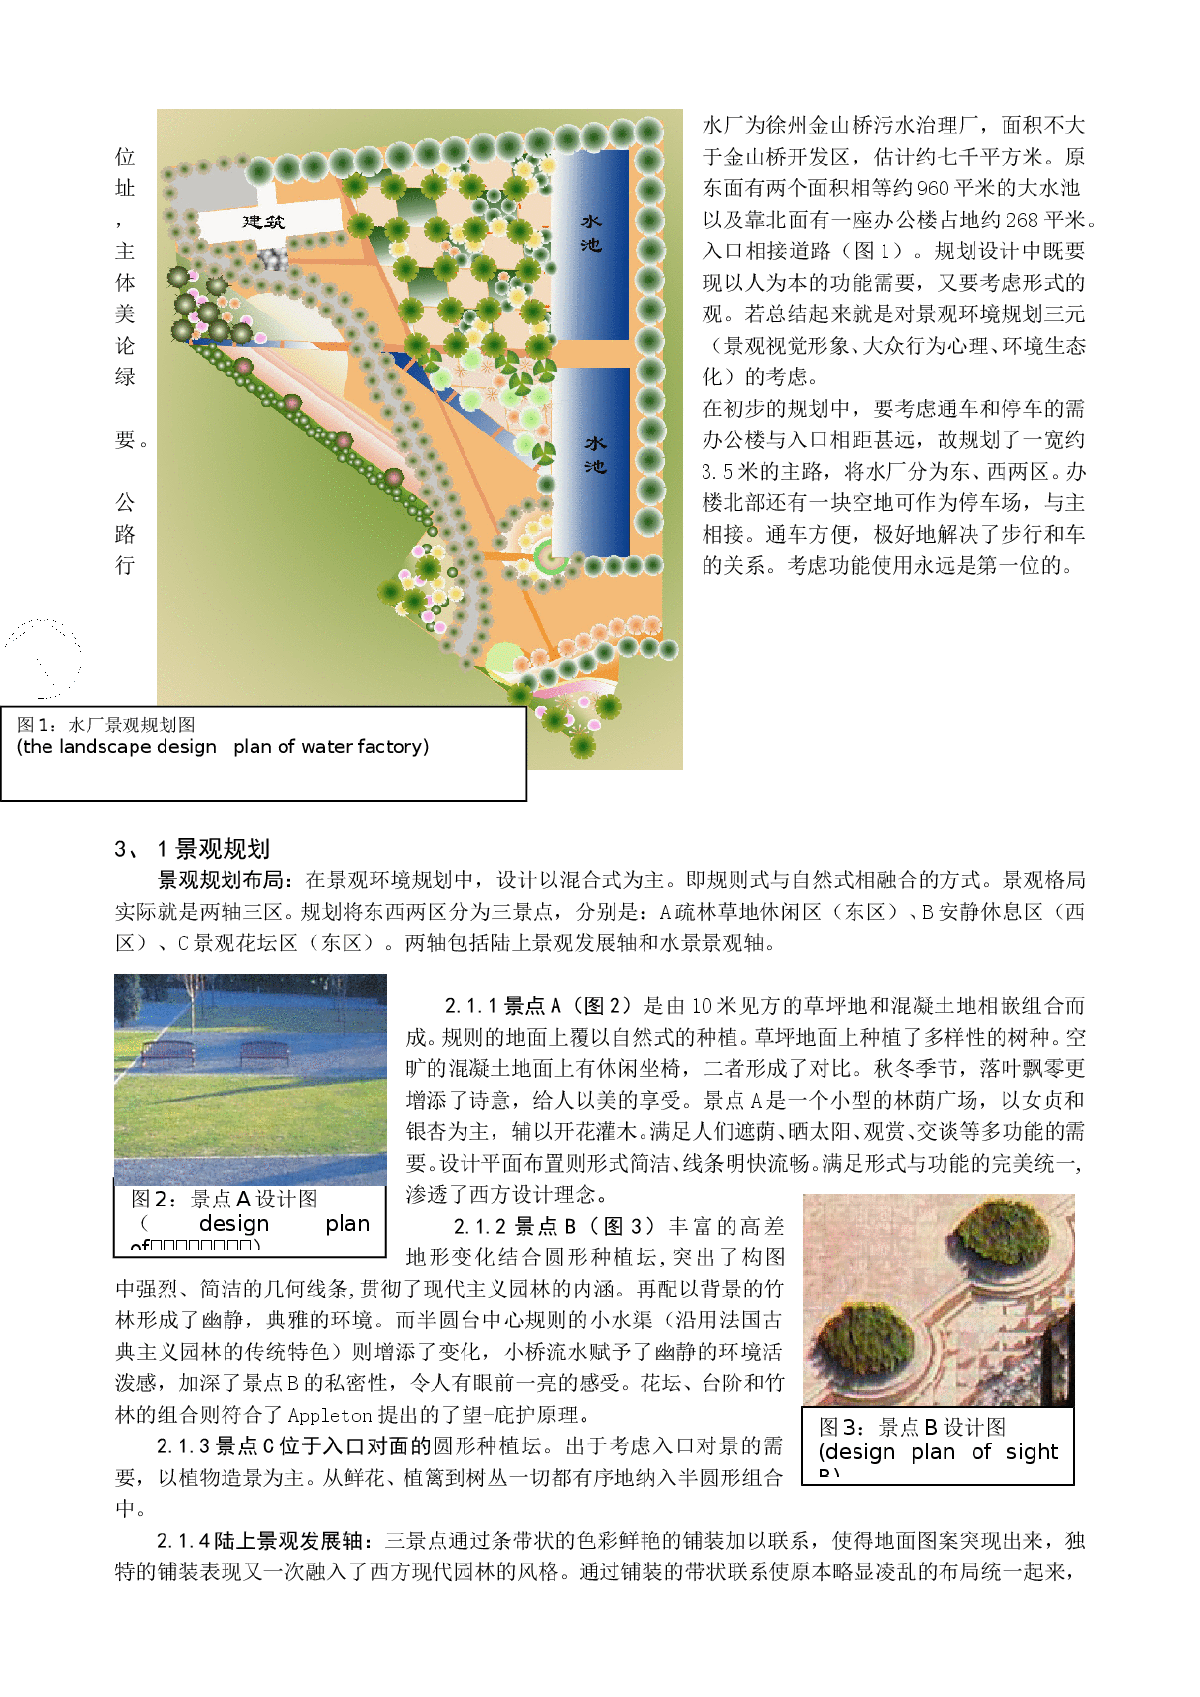 西方现代主义园林设计理念在水厂环境规划设计中的体现-图二